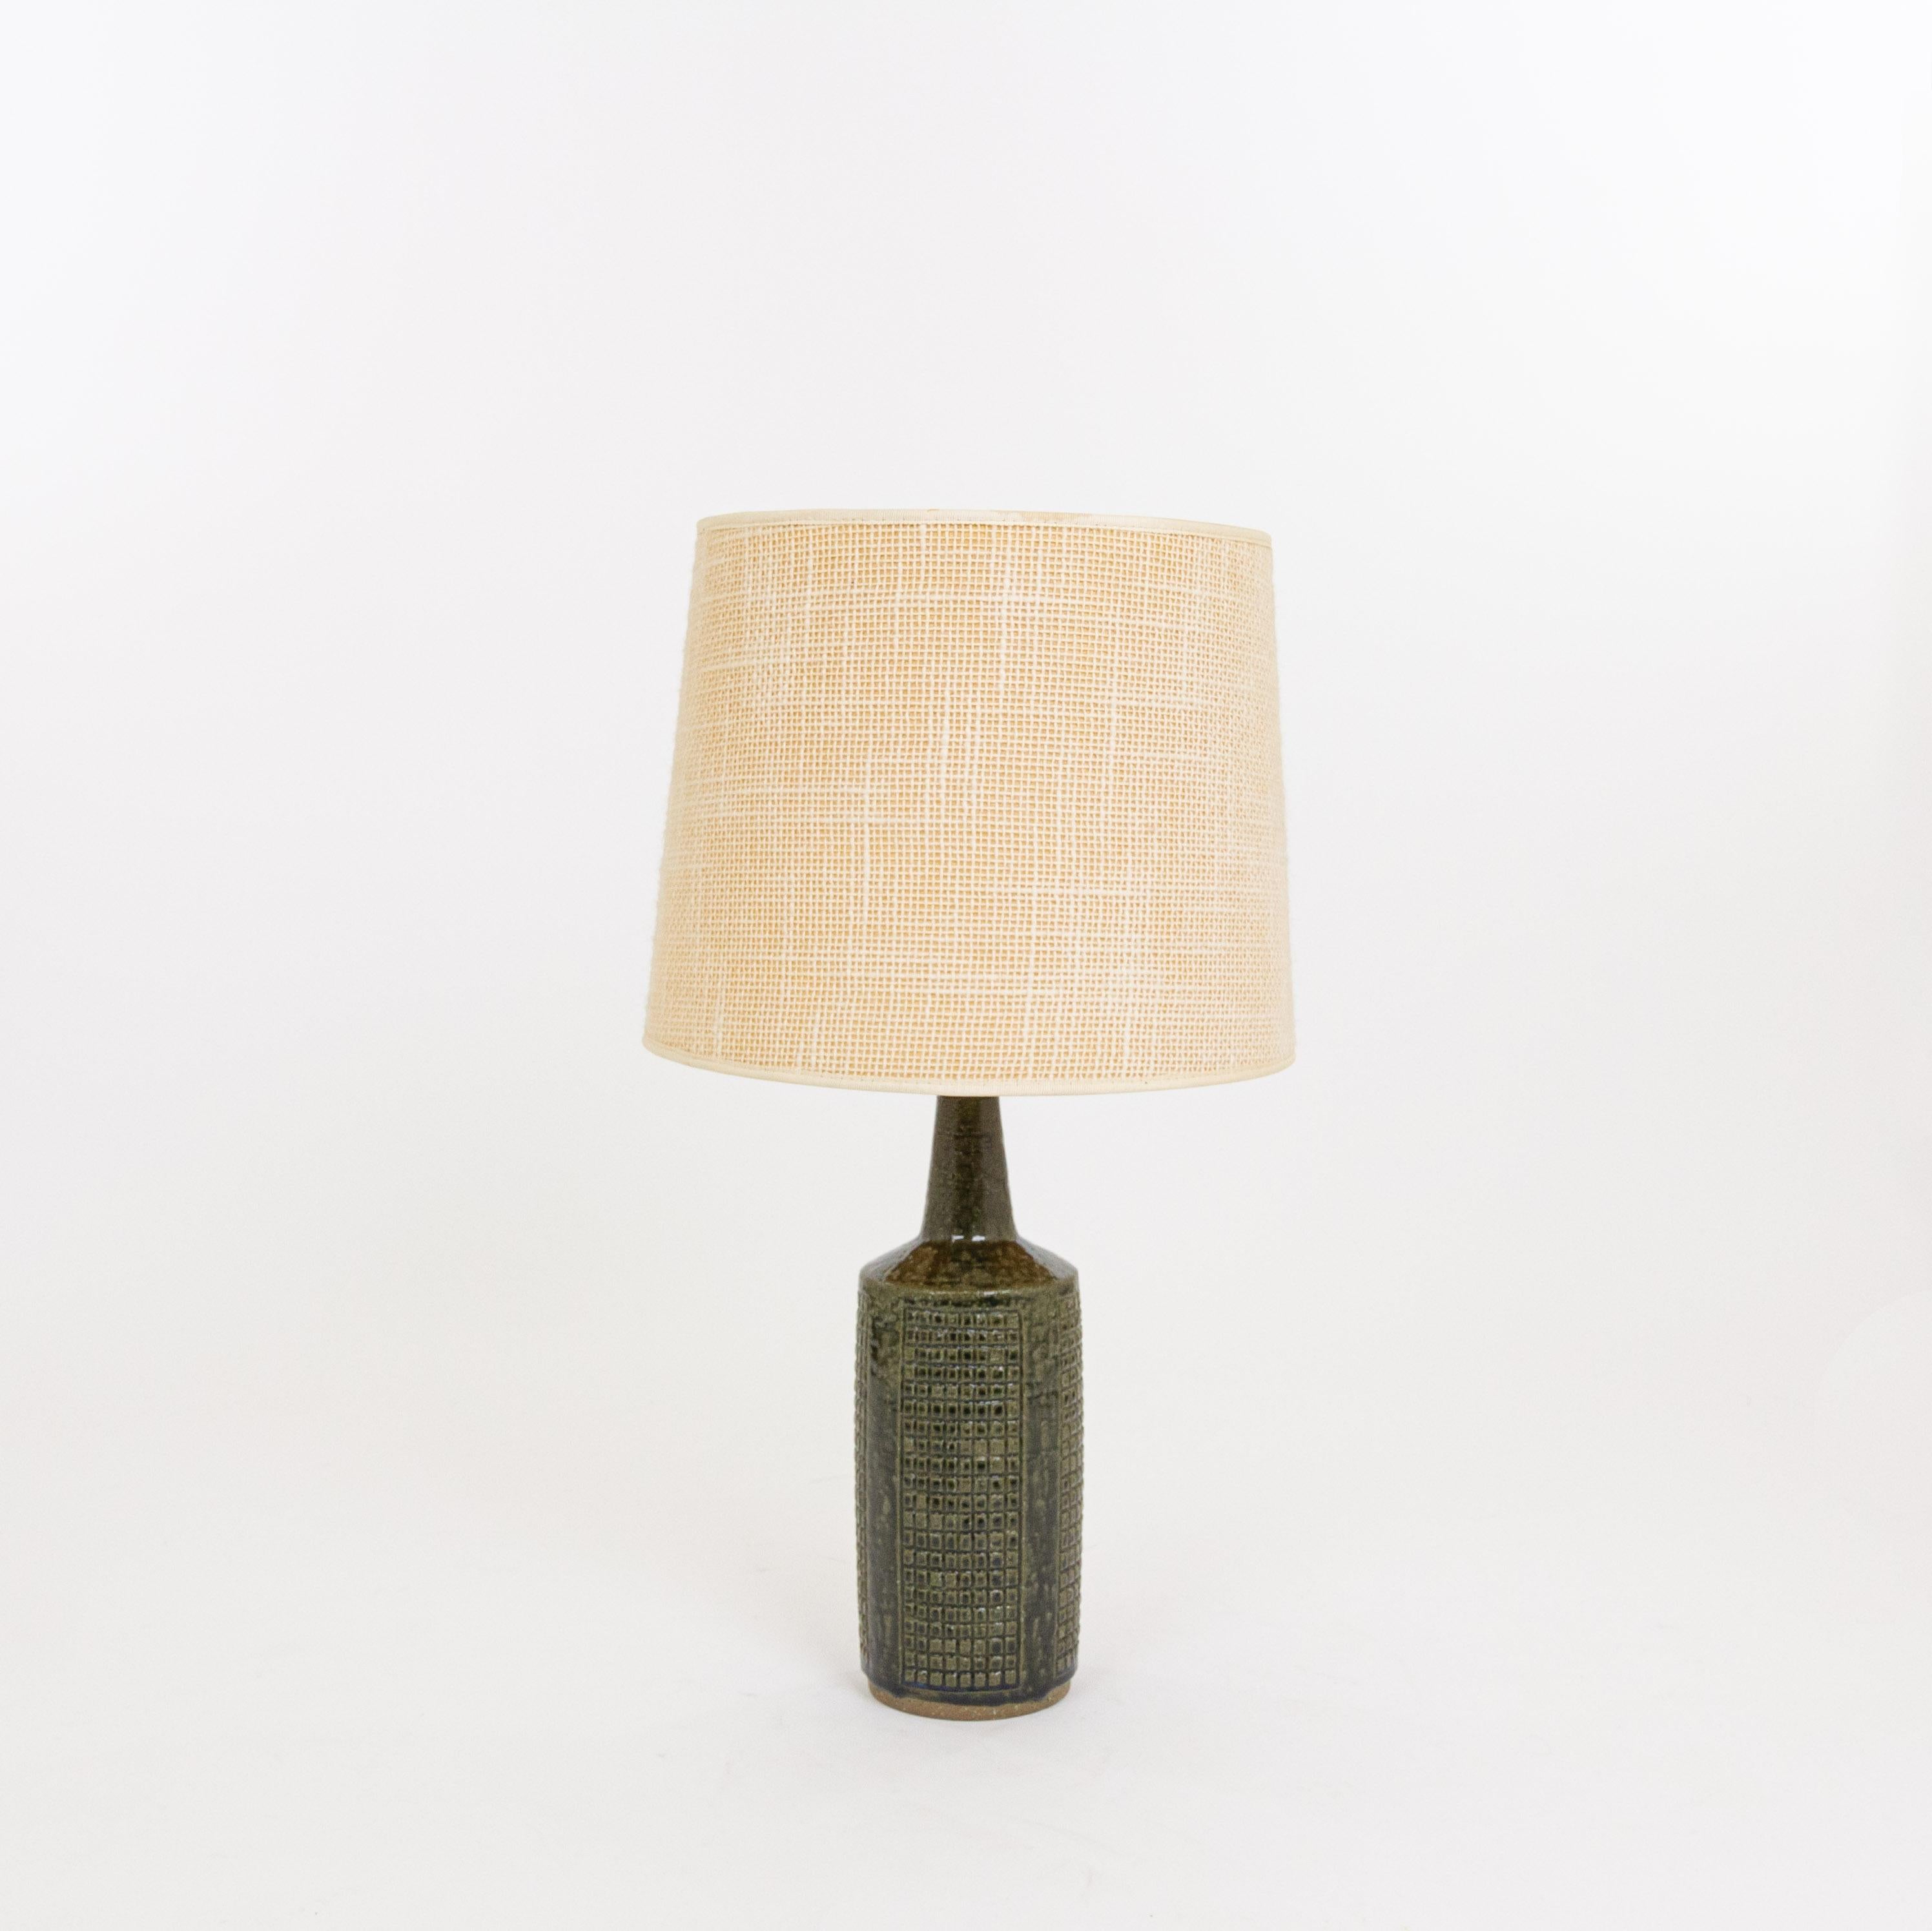 Tischleuchte Modell DL/30, hergestellt von Annelise und Per Linnemann-Schmidt für Palshus in den 1960er Jahren. Die Farbe des handgefertigten, dekorierten Sockels ist Army Green. Es hat beeindruckende, geometrische Muster.

Die Lampe wird mit der